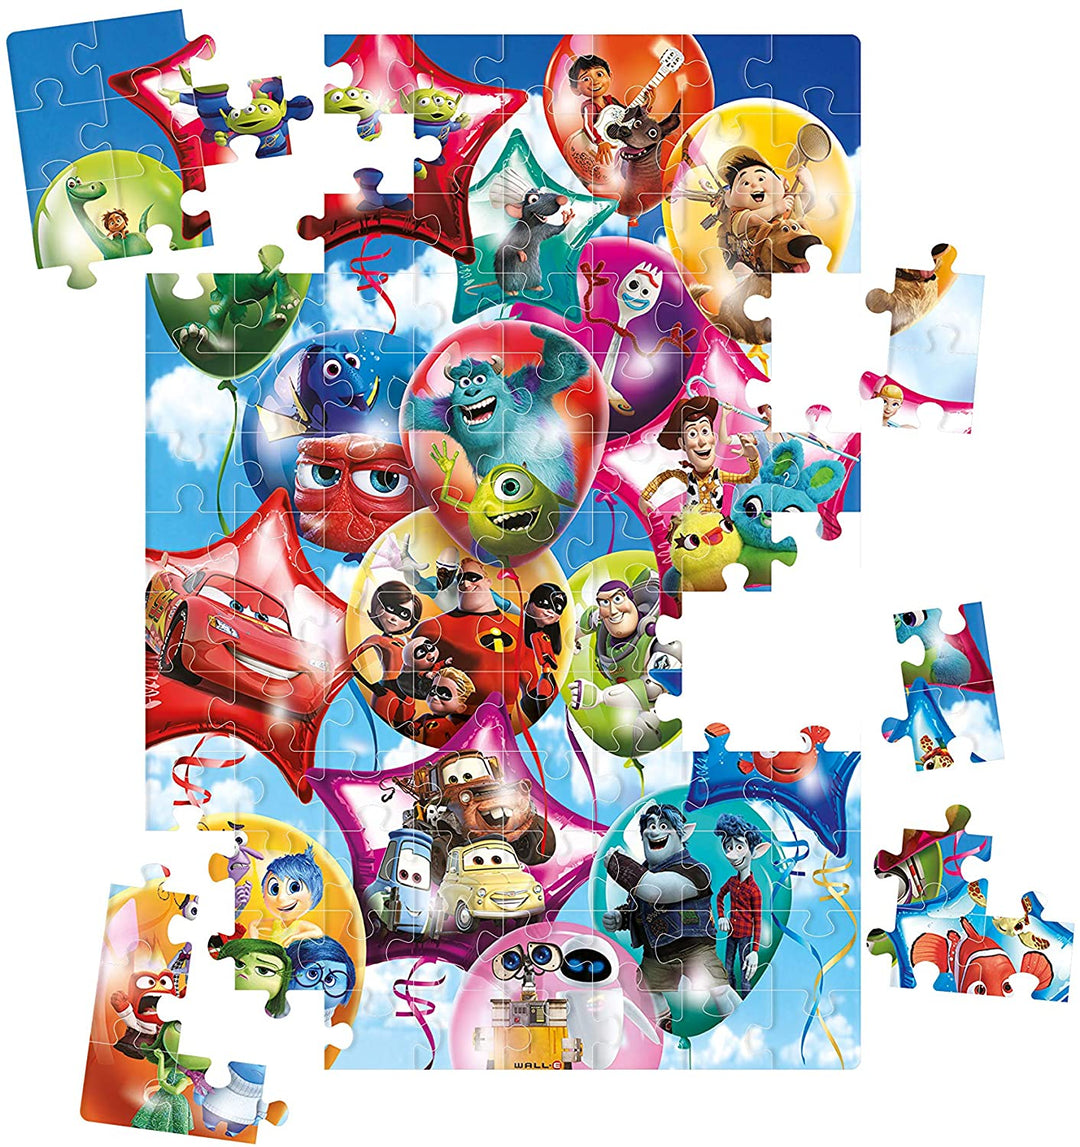 Clementoni 25717, Pixar Party Supercolor Puzzle for Children - 104 Pieces, Ages 6 years Plus